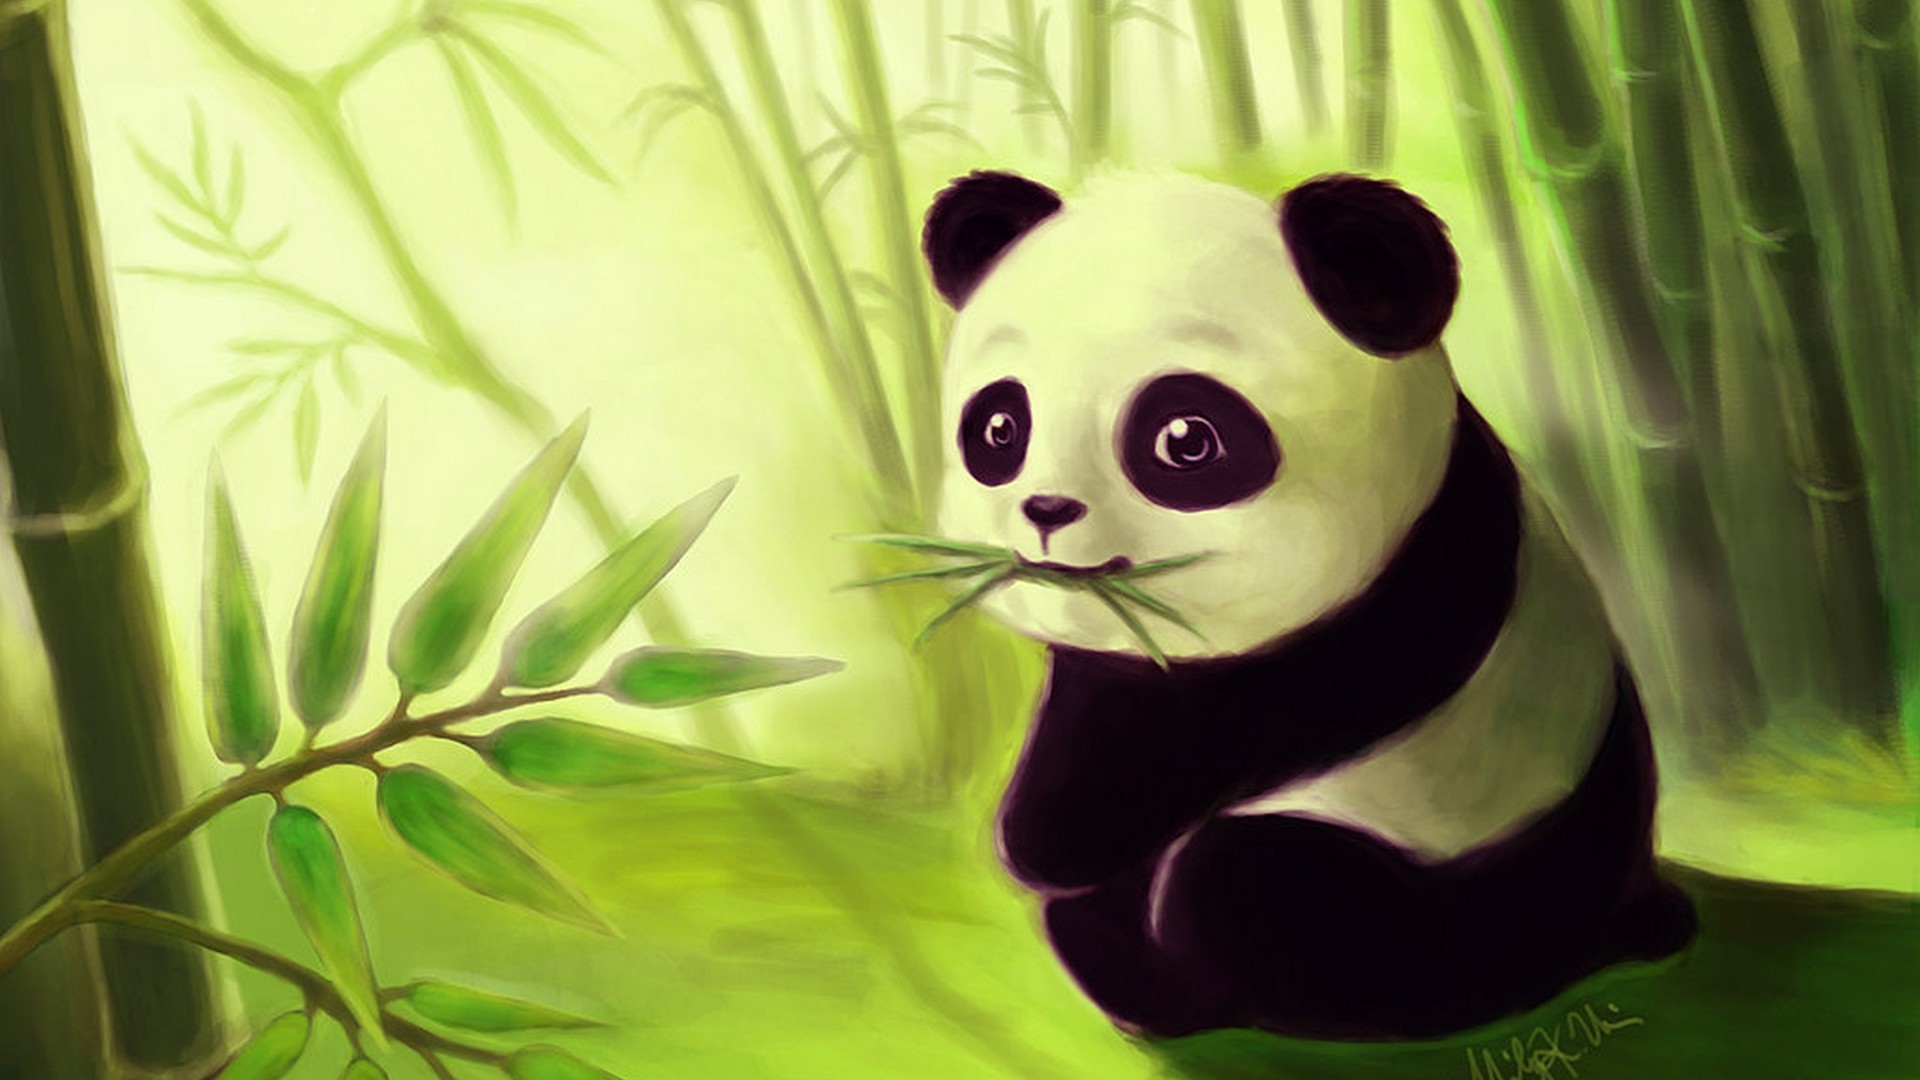 Free download Cute Cartoon Panda Wallpapers Top Cute Cartoon Panda